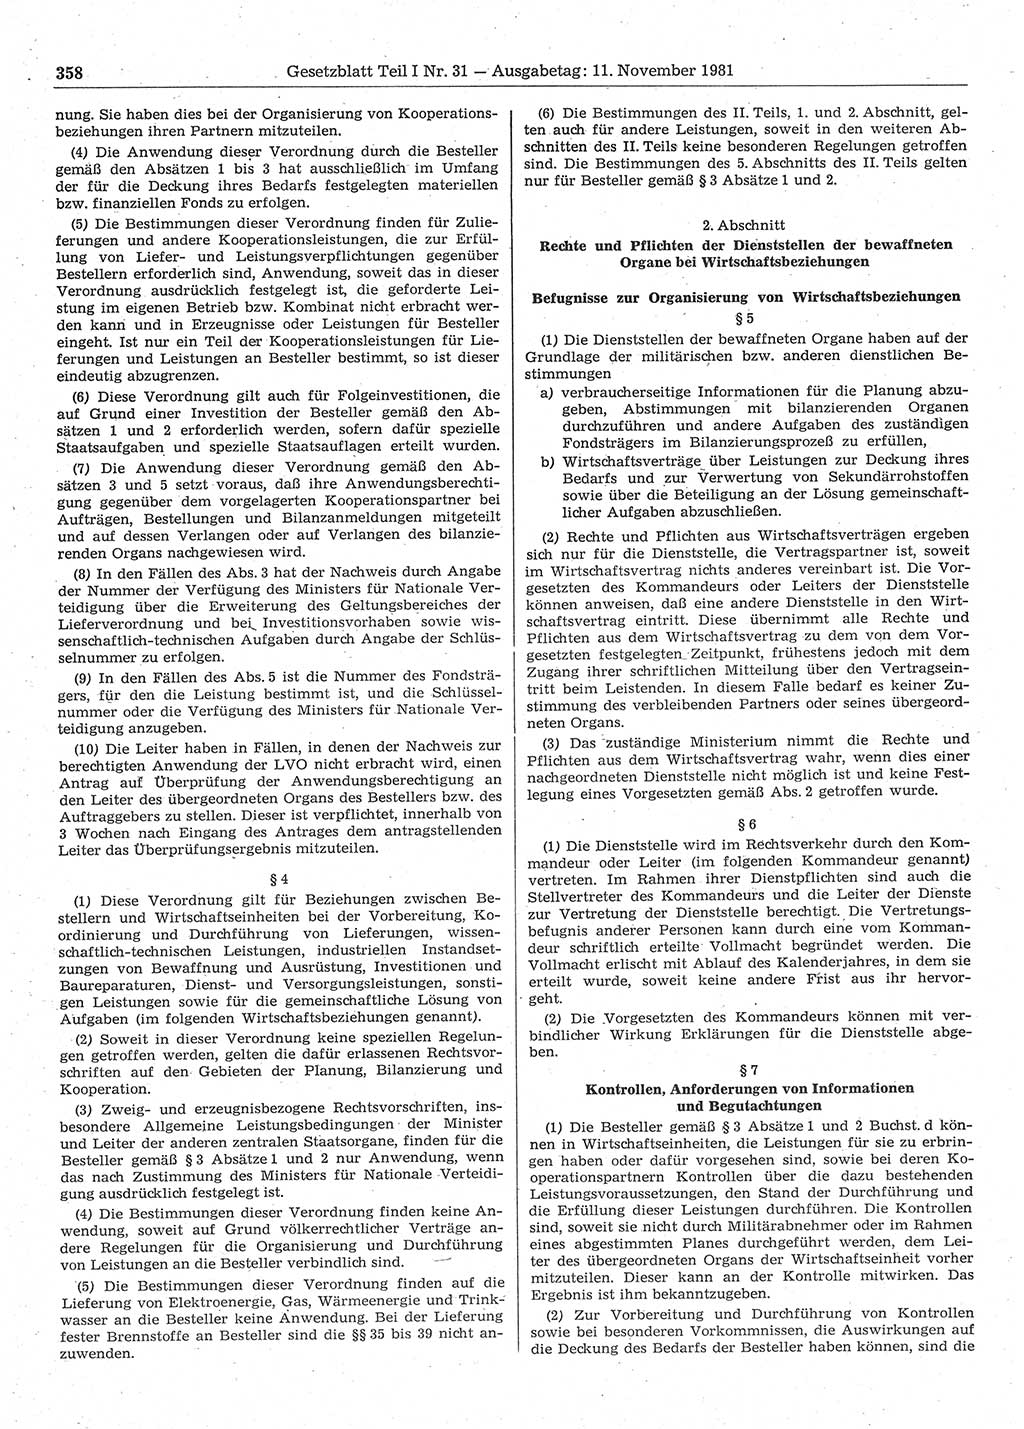 Gesetzblatt (GBl.) der Deutschen Demokratischen Republik (DDR) Teil Ⅰ 1981, Seite 358 (GBl. DDR Ⅰ 1981, S. 358)